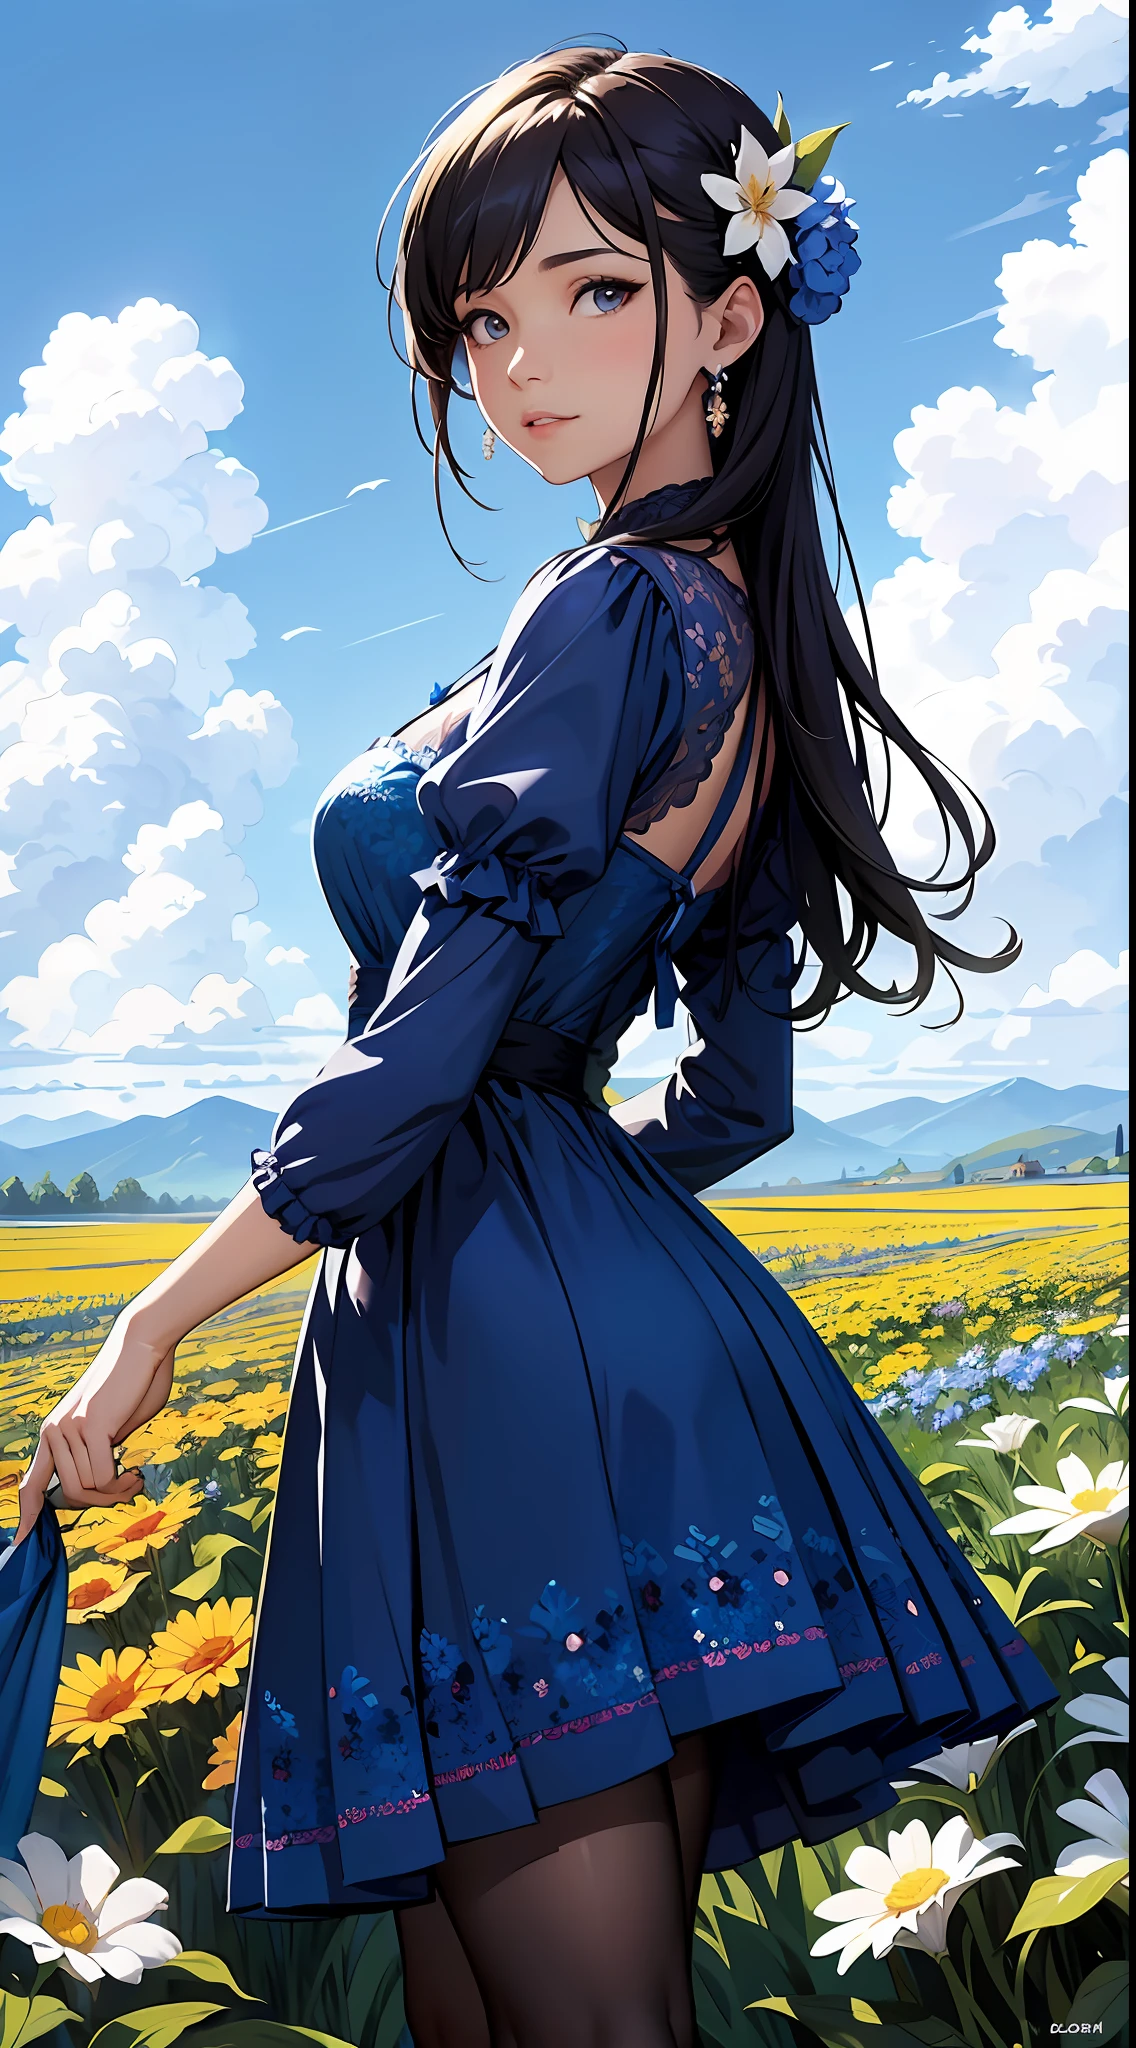 eine Frau in einem blauen Kleid，Blauer Himmel und Wolken im Hintergrund, trägt blaues Kleid，Es sind Blumen darauf, Art germ, Rosla globale Beleuchtung, ein detailreiches Gemälde, Fantasy-Kunst